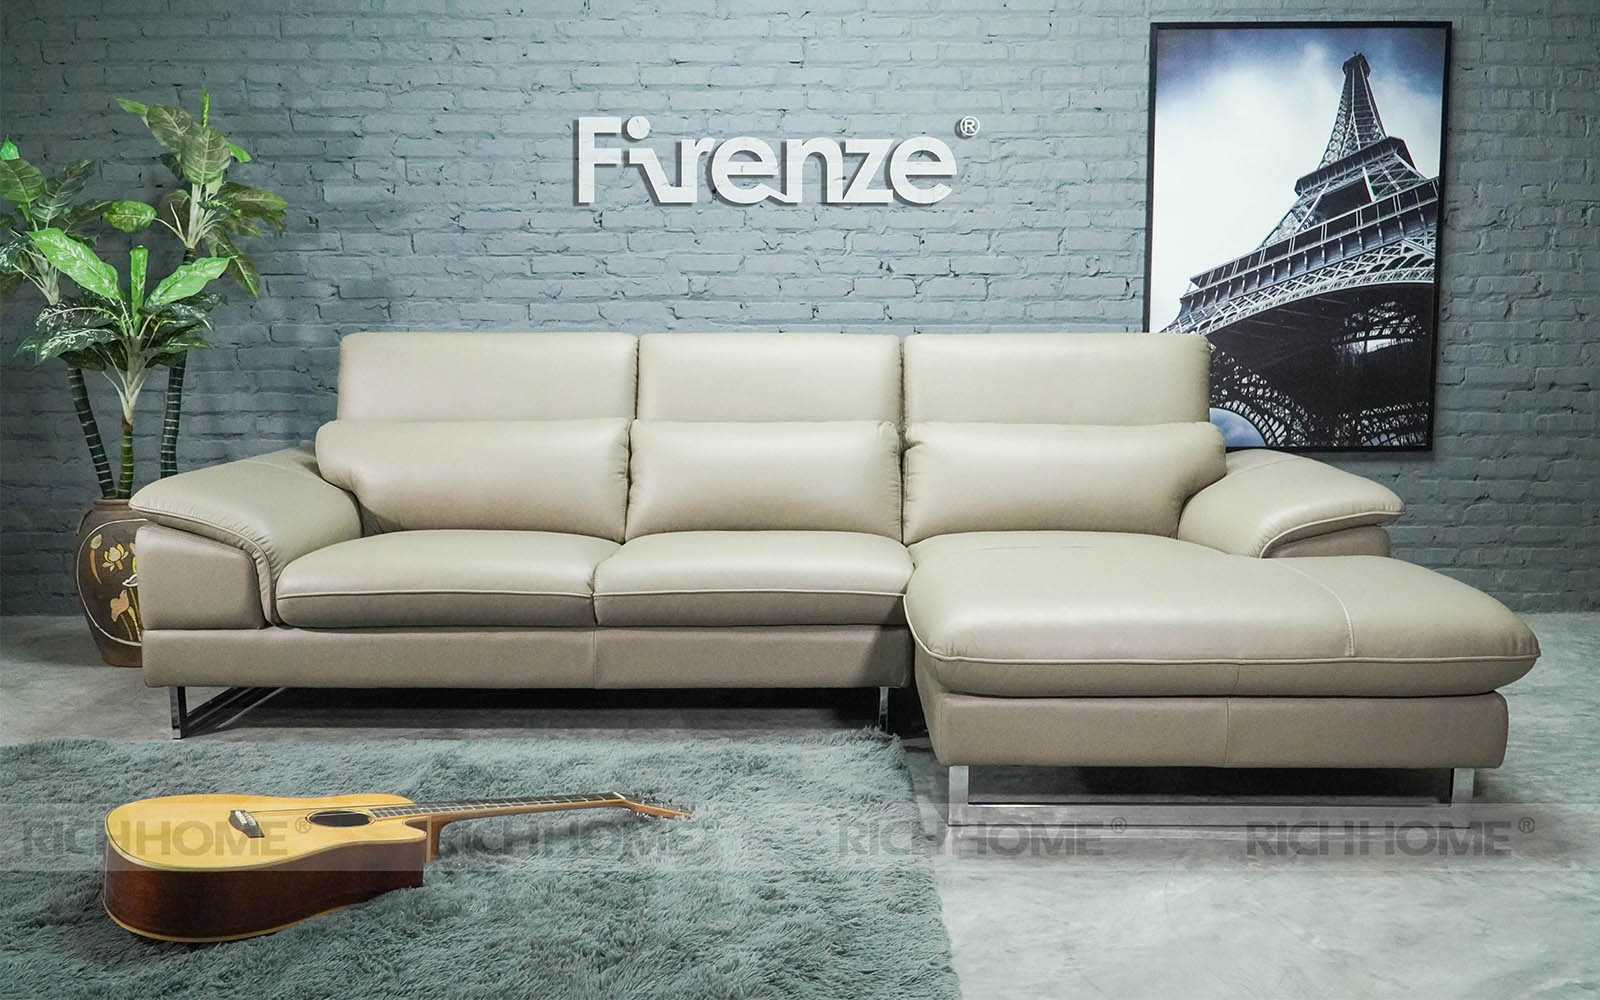 Những kiểu dáng ghế sofa cho chung cư theo xu hướng mới nhất - Ảnh 2